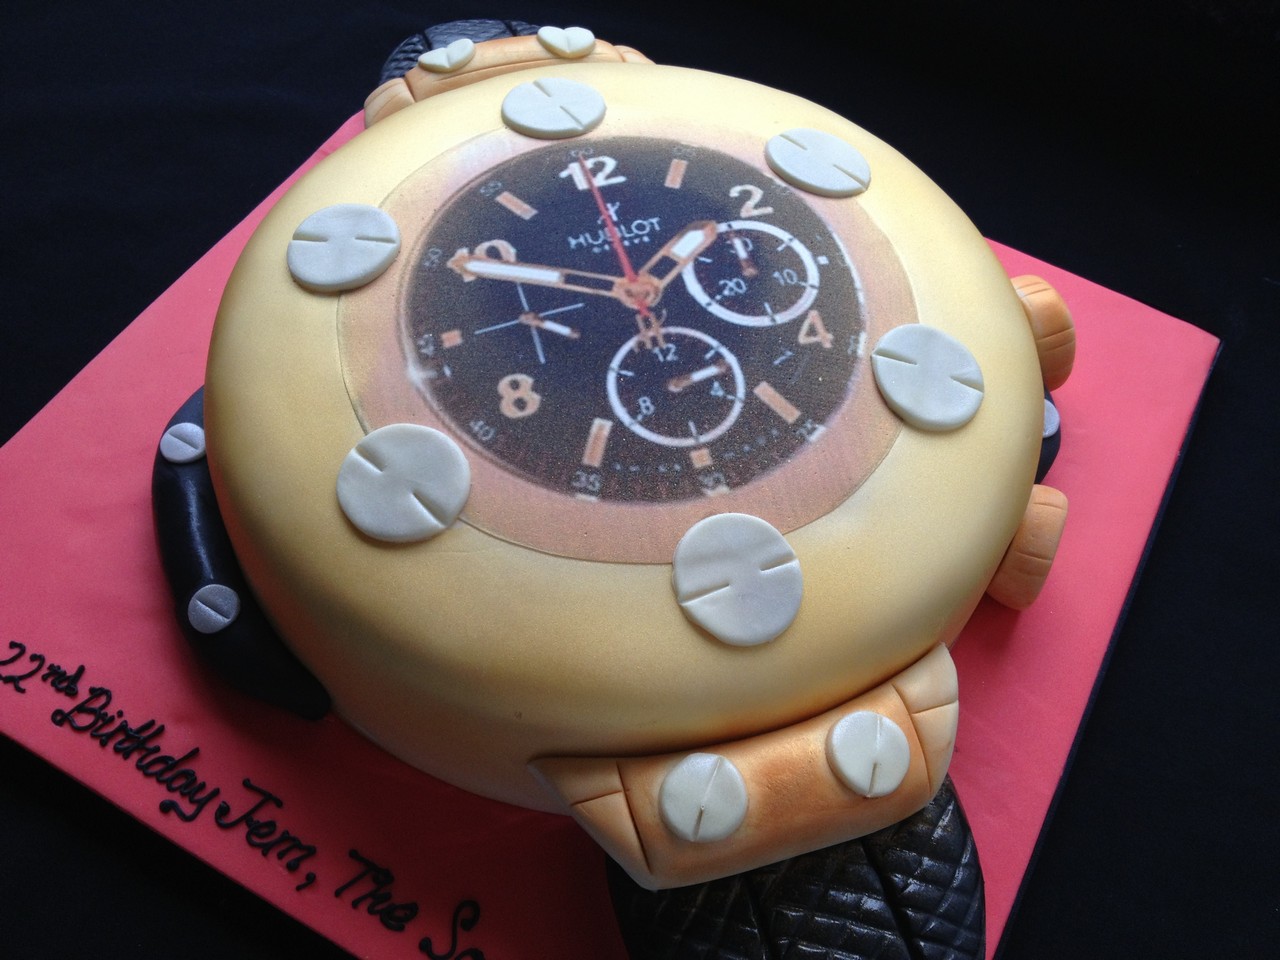 Hublot Watch Cake Cake | Novelty Cakes